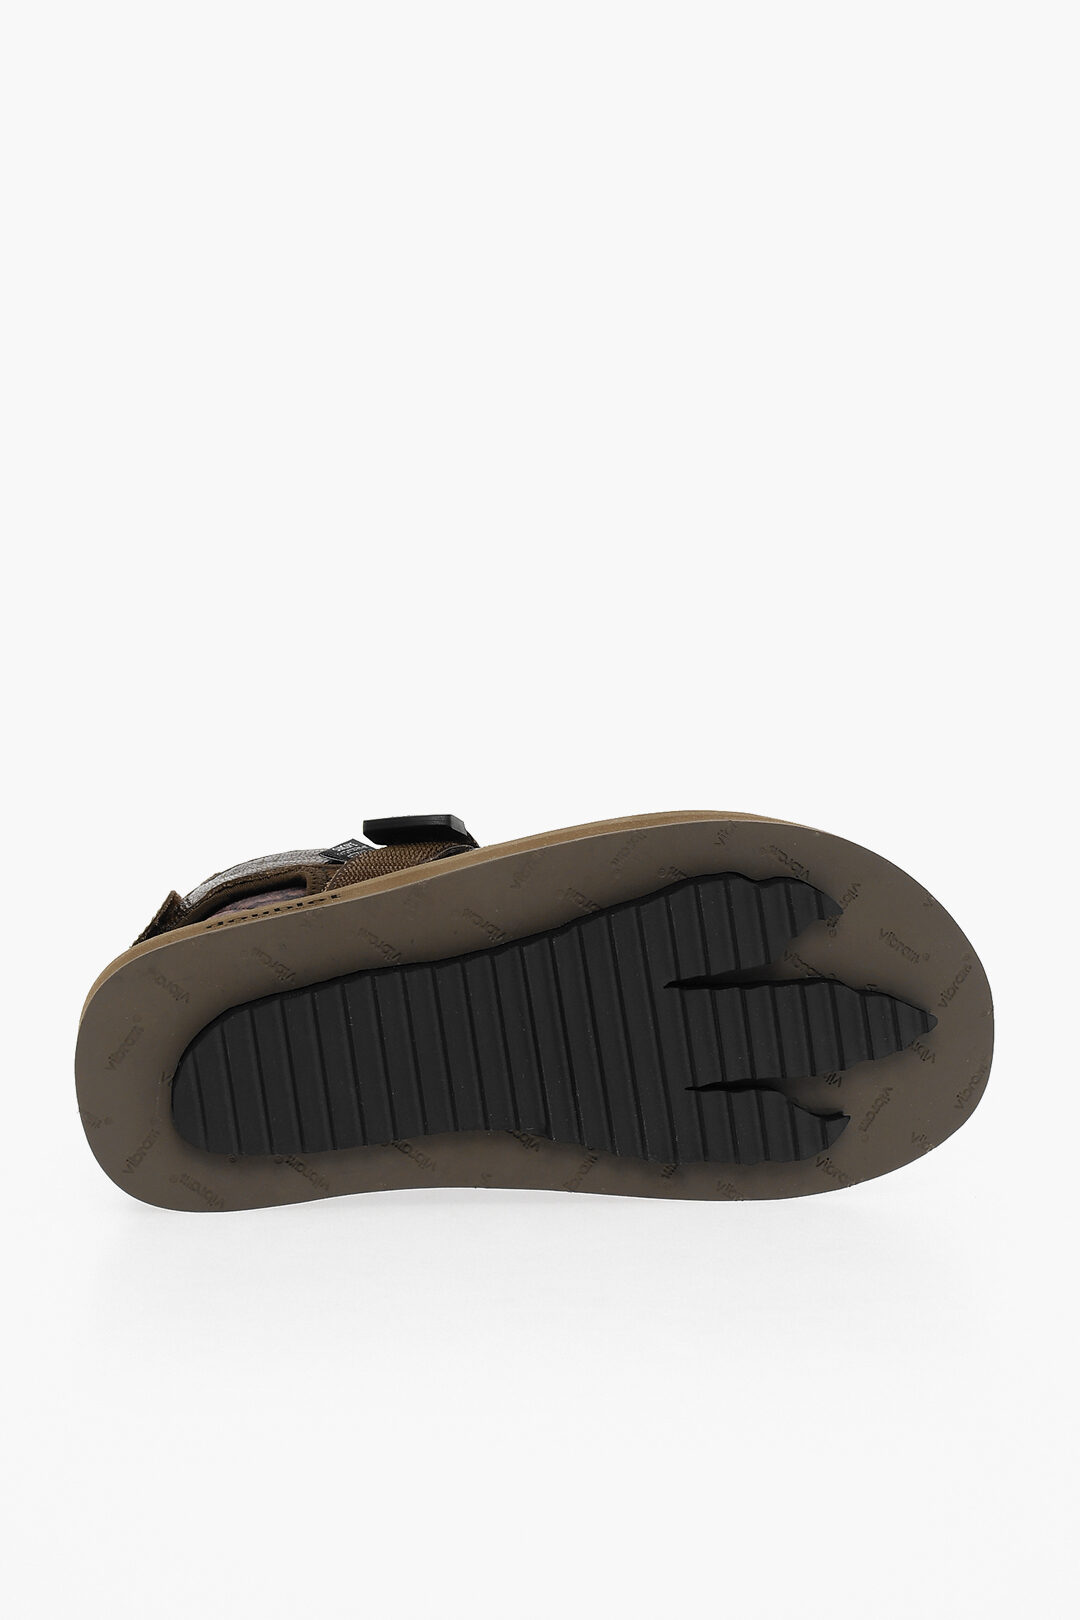 Buy DIESEL Mayemi SA- Mayemi CC X Sandals | White Color Men | AJIO LUXE